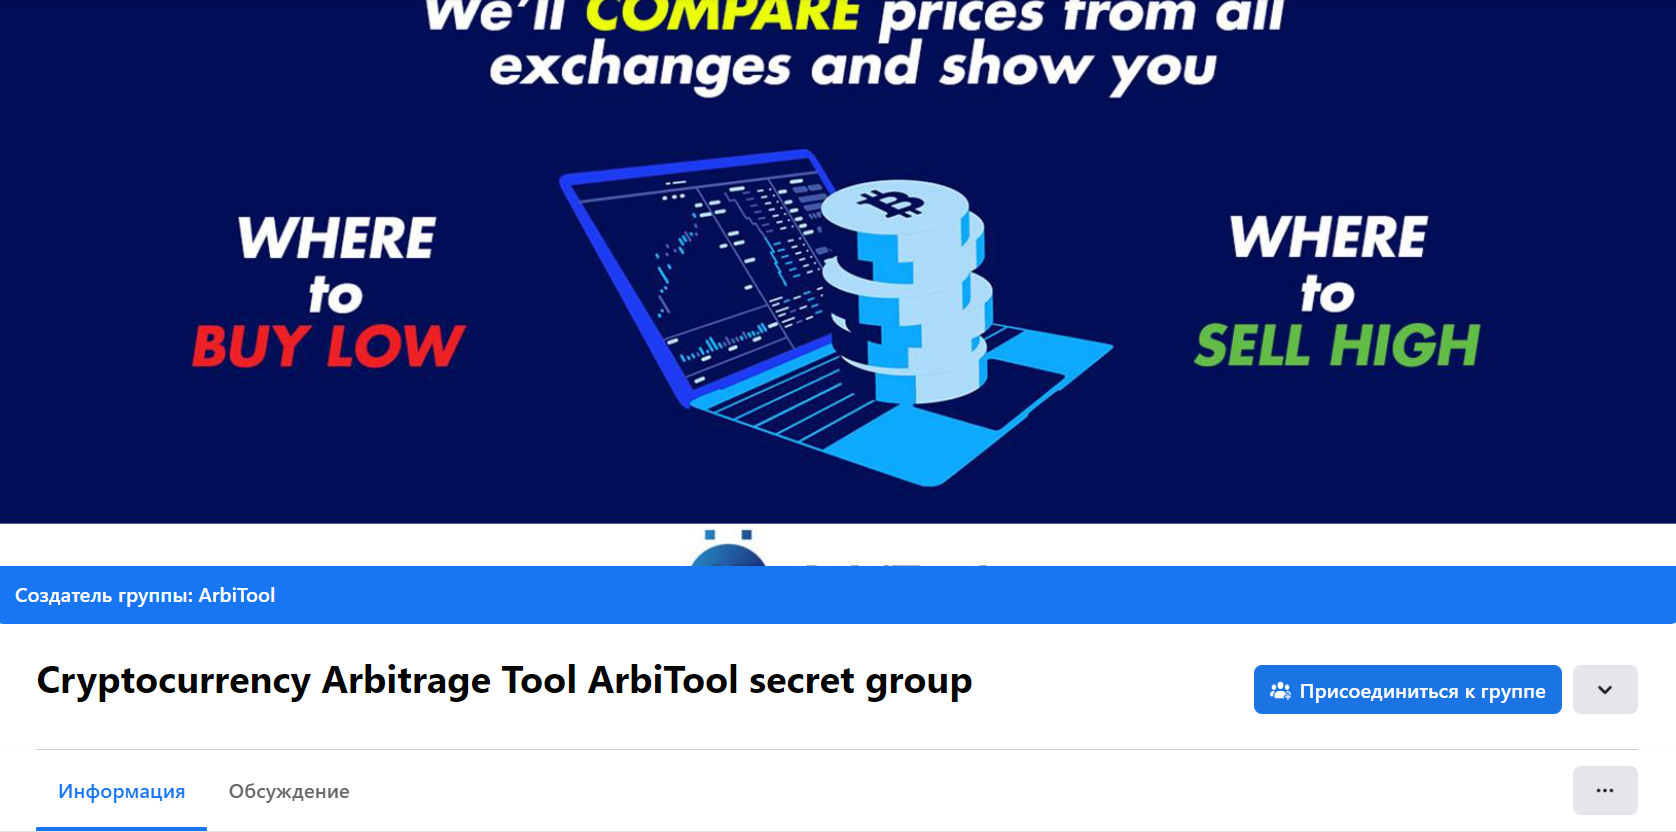 Сообщество Arbitool в Фейсбук